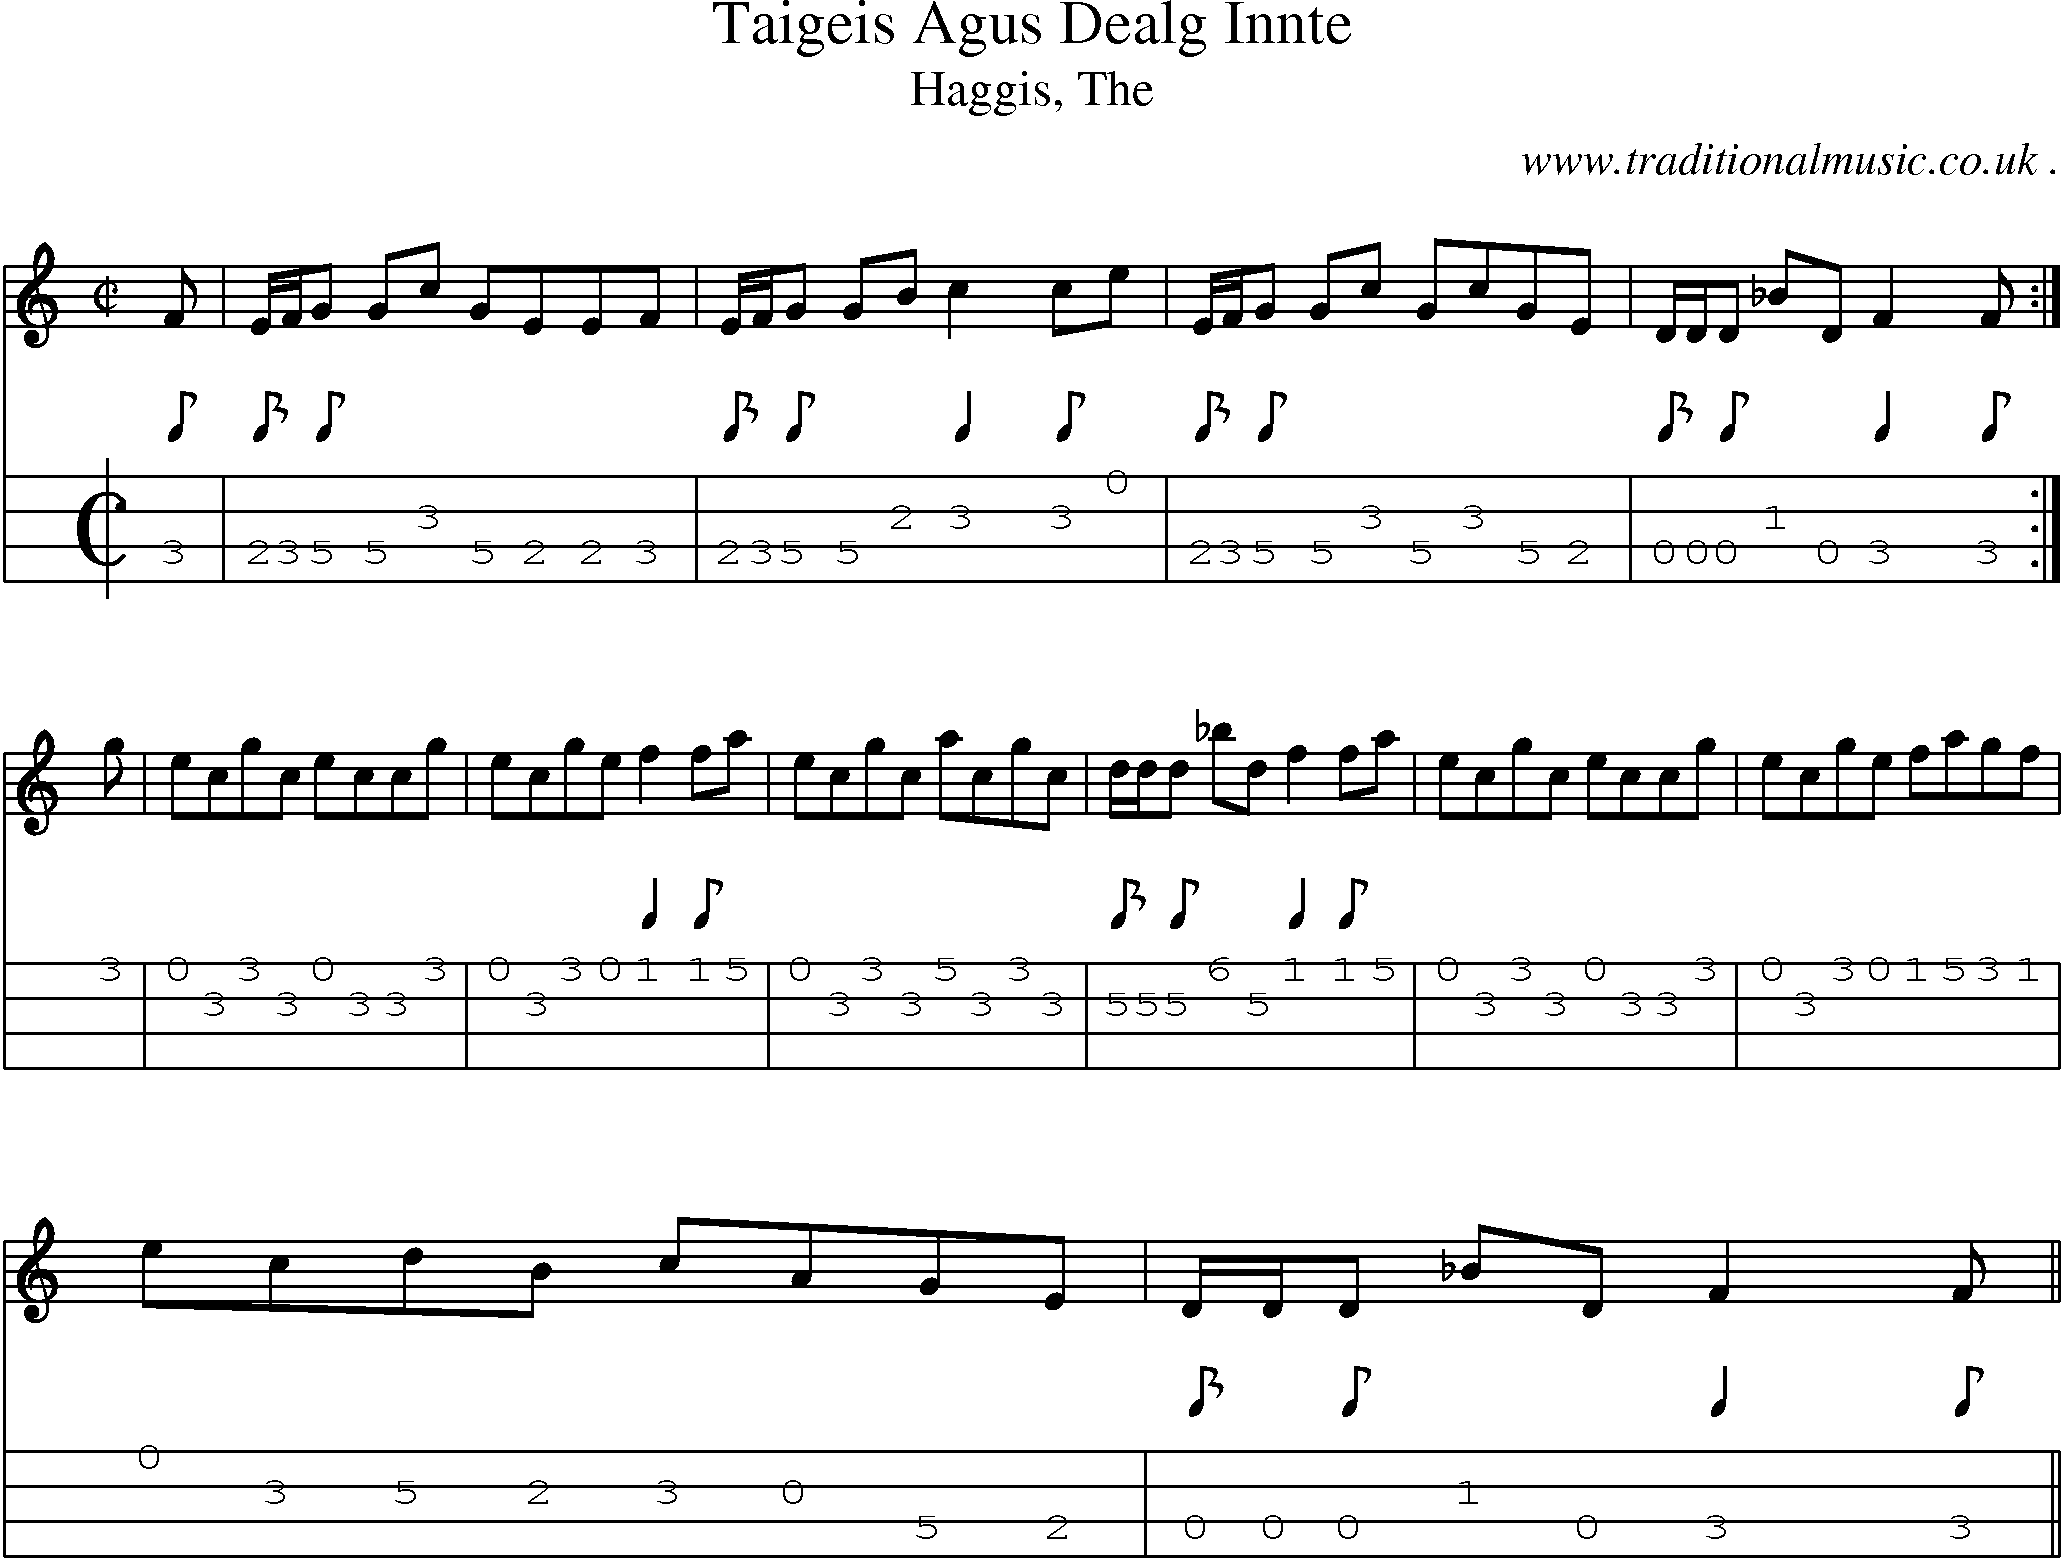 Sheet-music  score, Chords and Mandolin Tabs for Taigeis Agus Dealg Innte